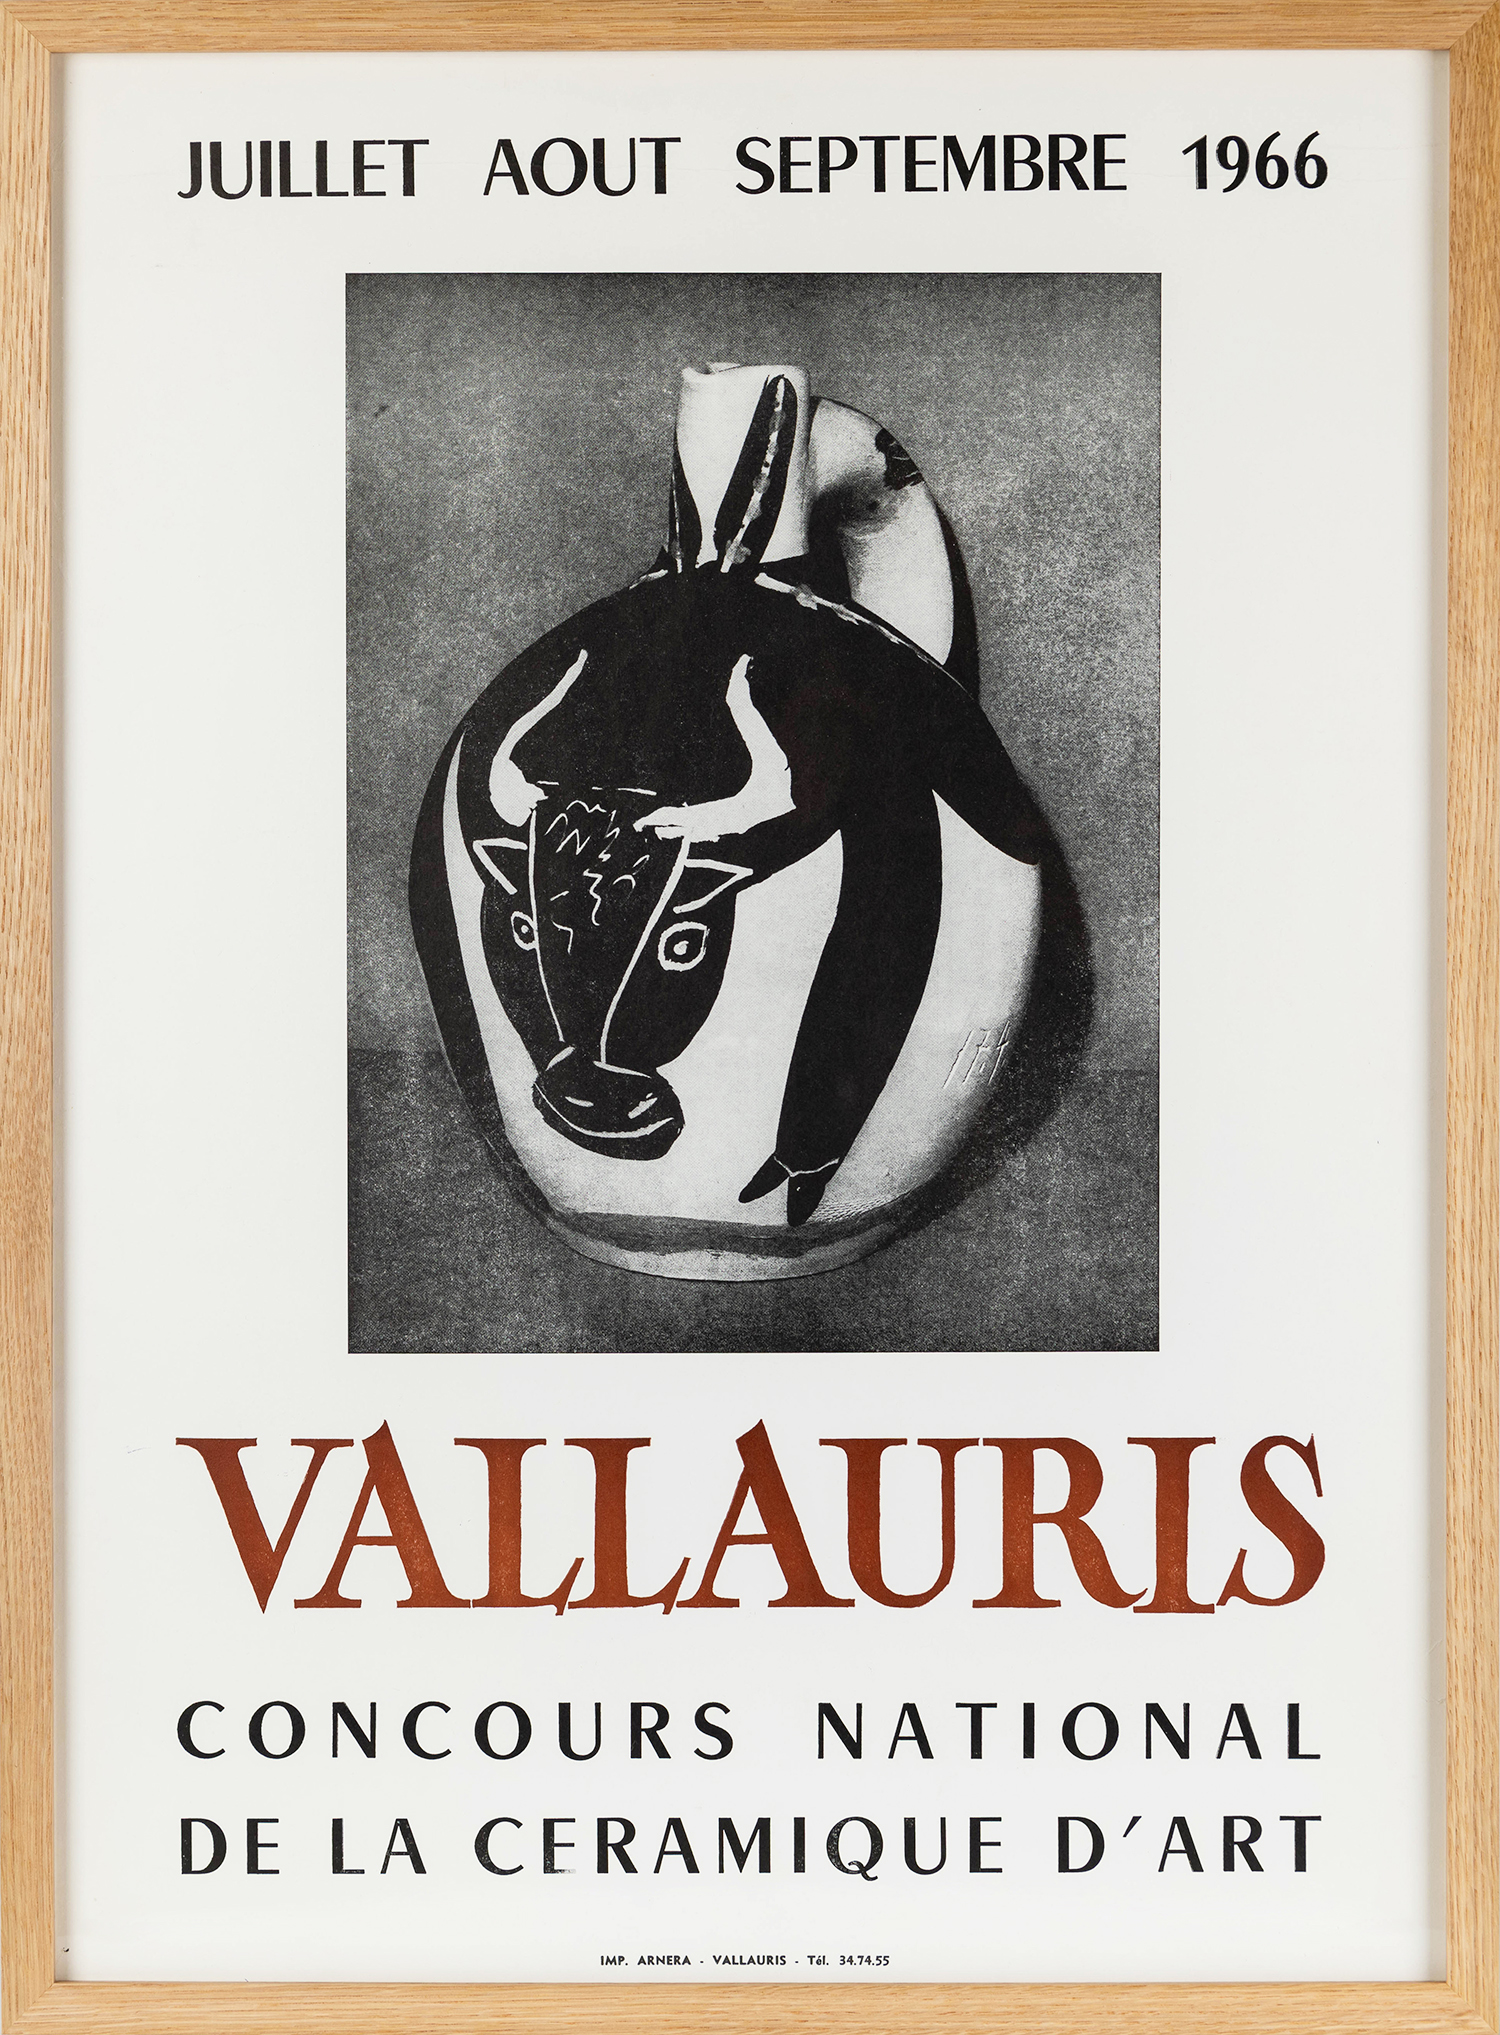 Vallauris Concours National de la Ceramique d'Art, 1966